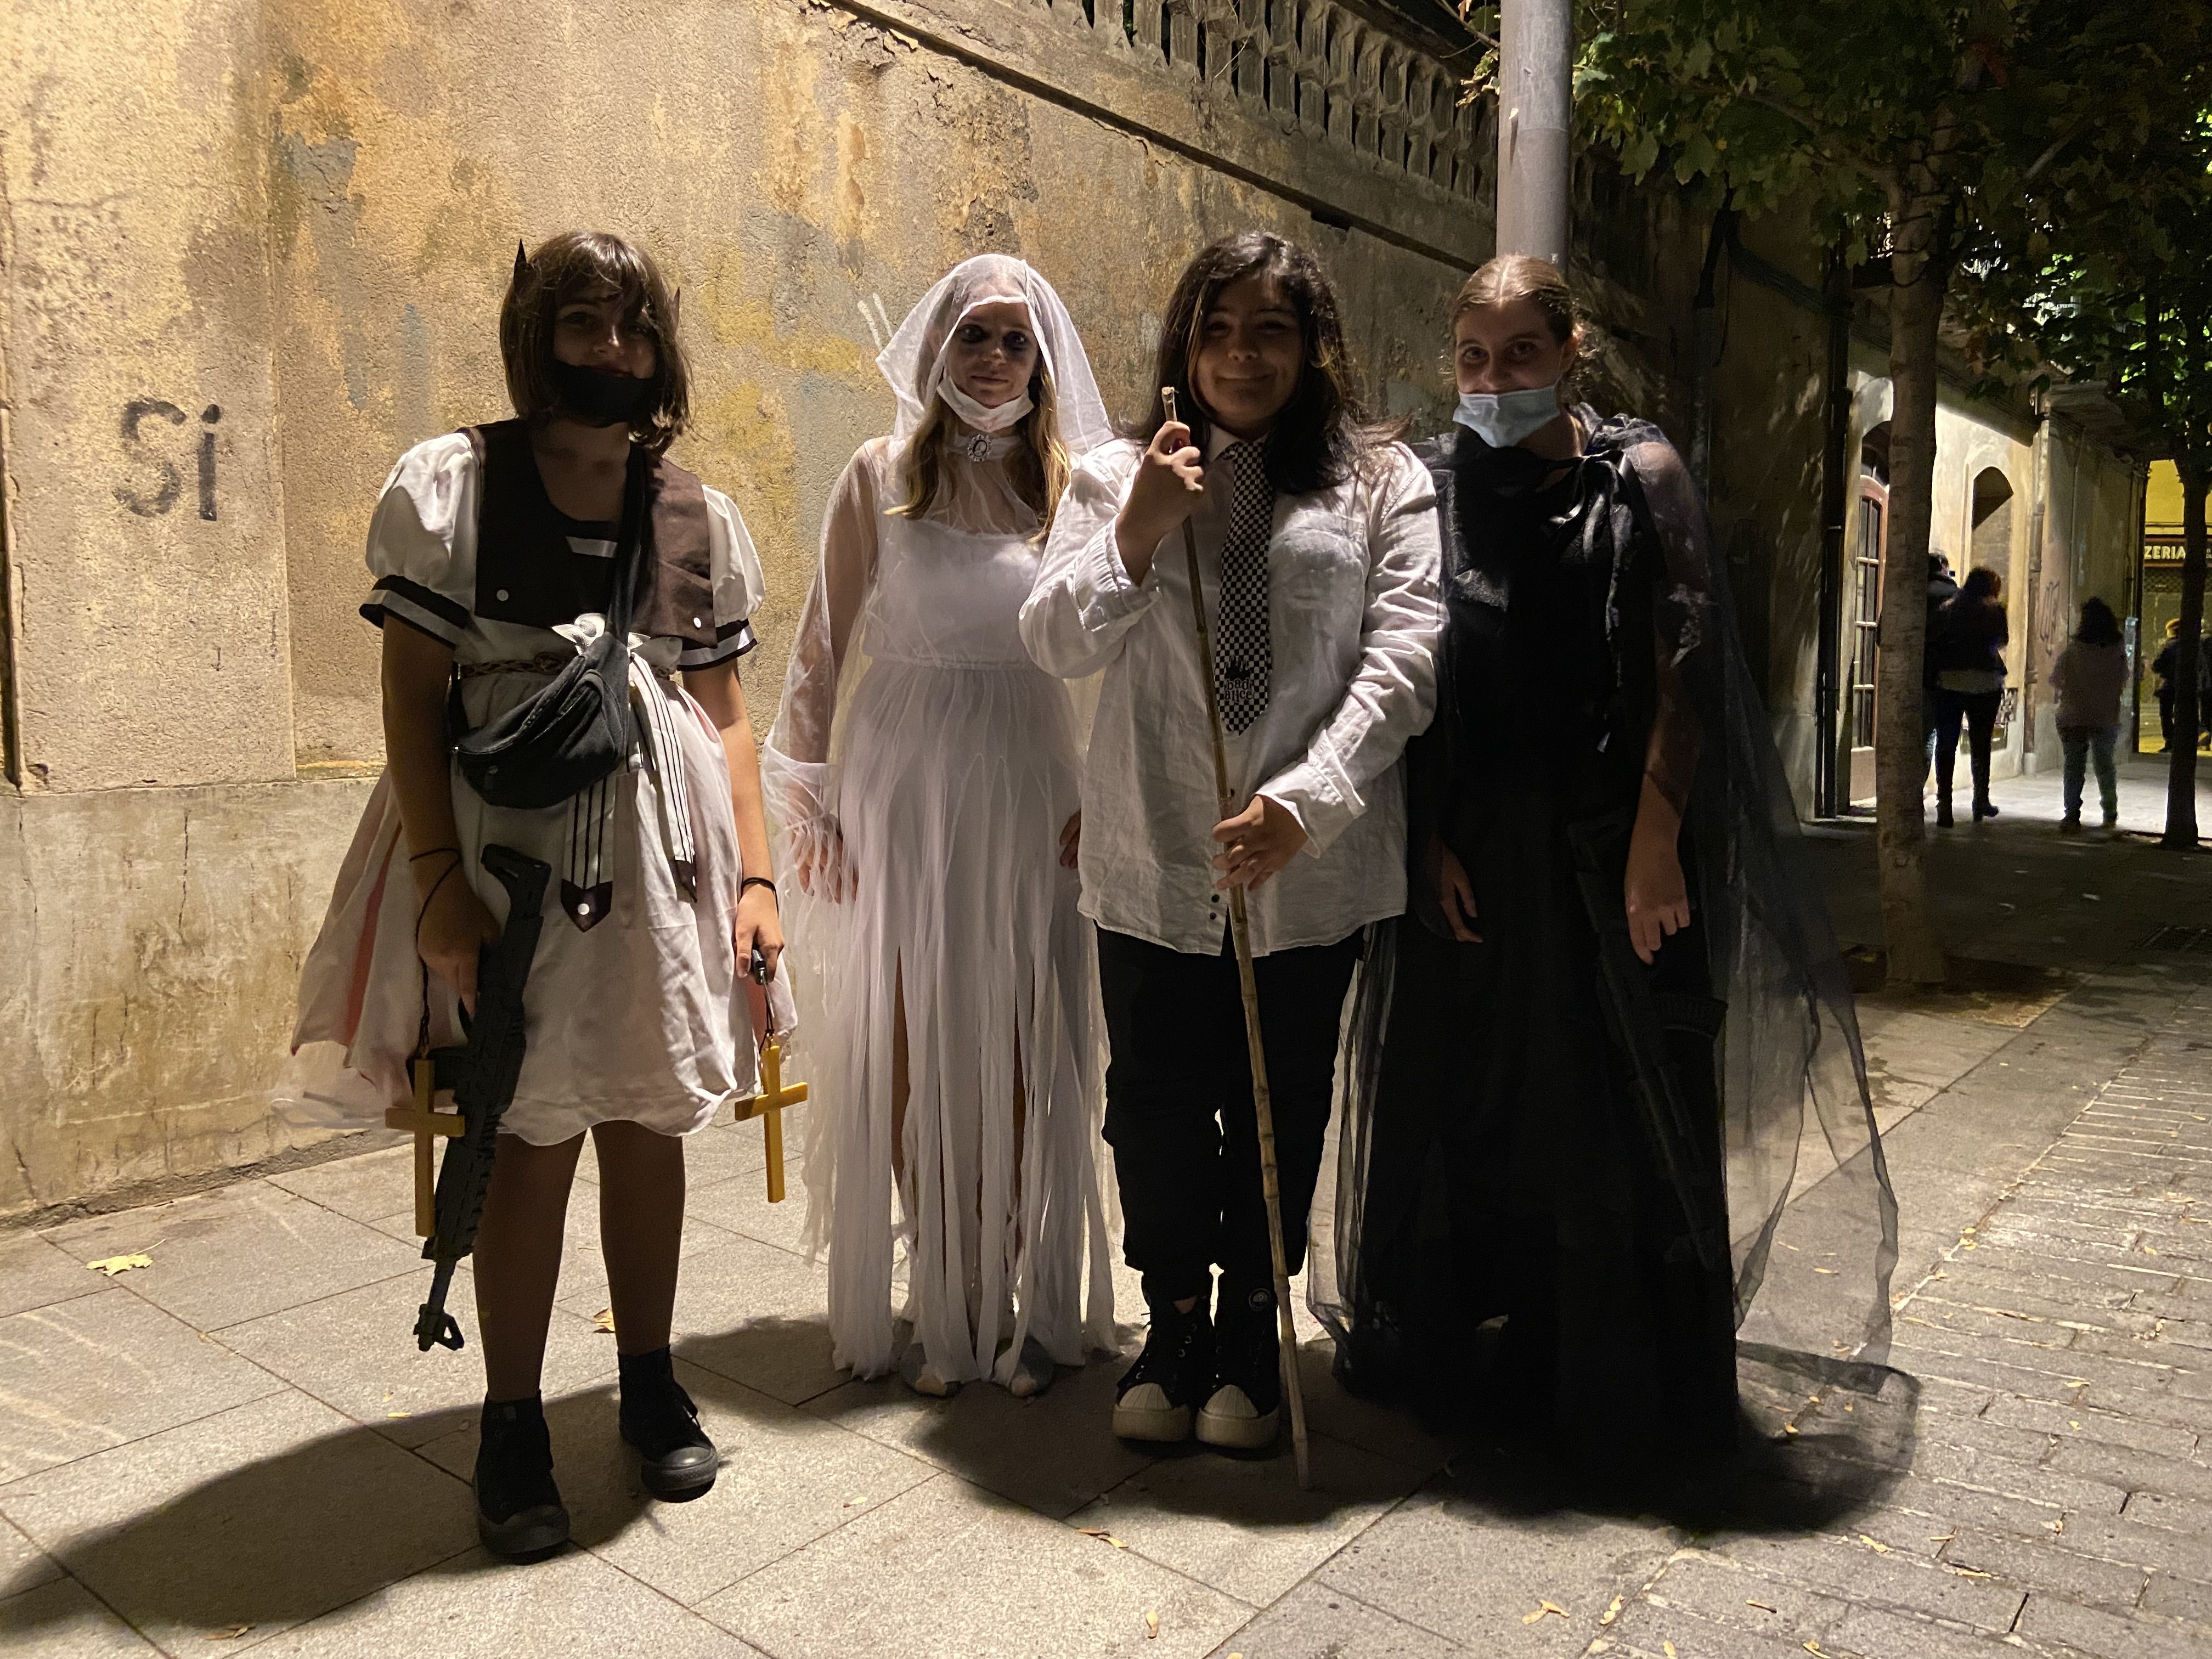 Quatre veïnes de Cerdanyola disfressades la nit de Halloween. FOTO: Nora Muñoz Otero